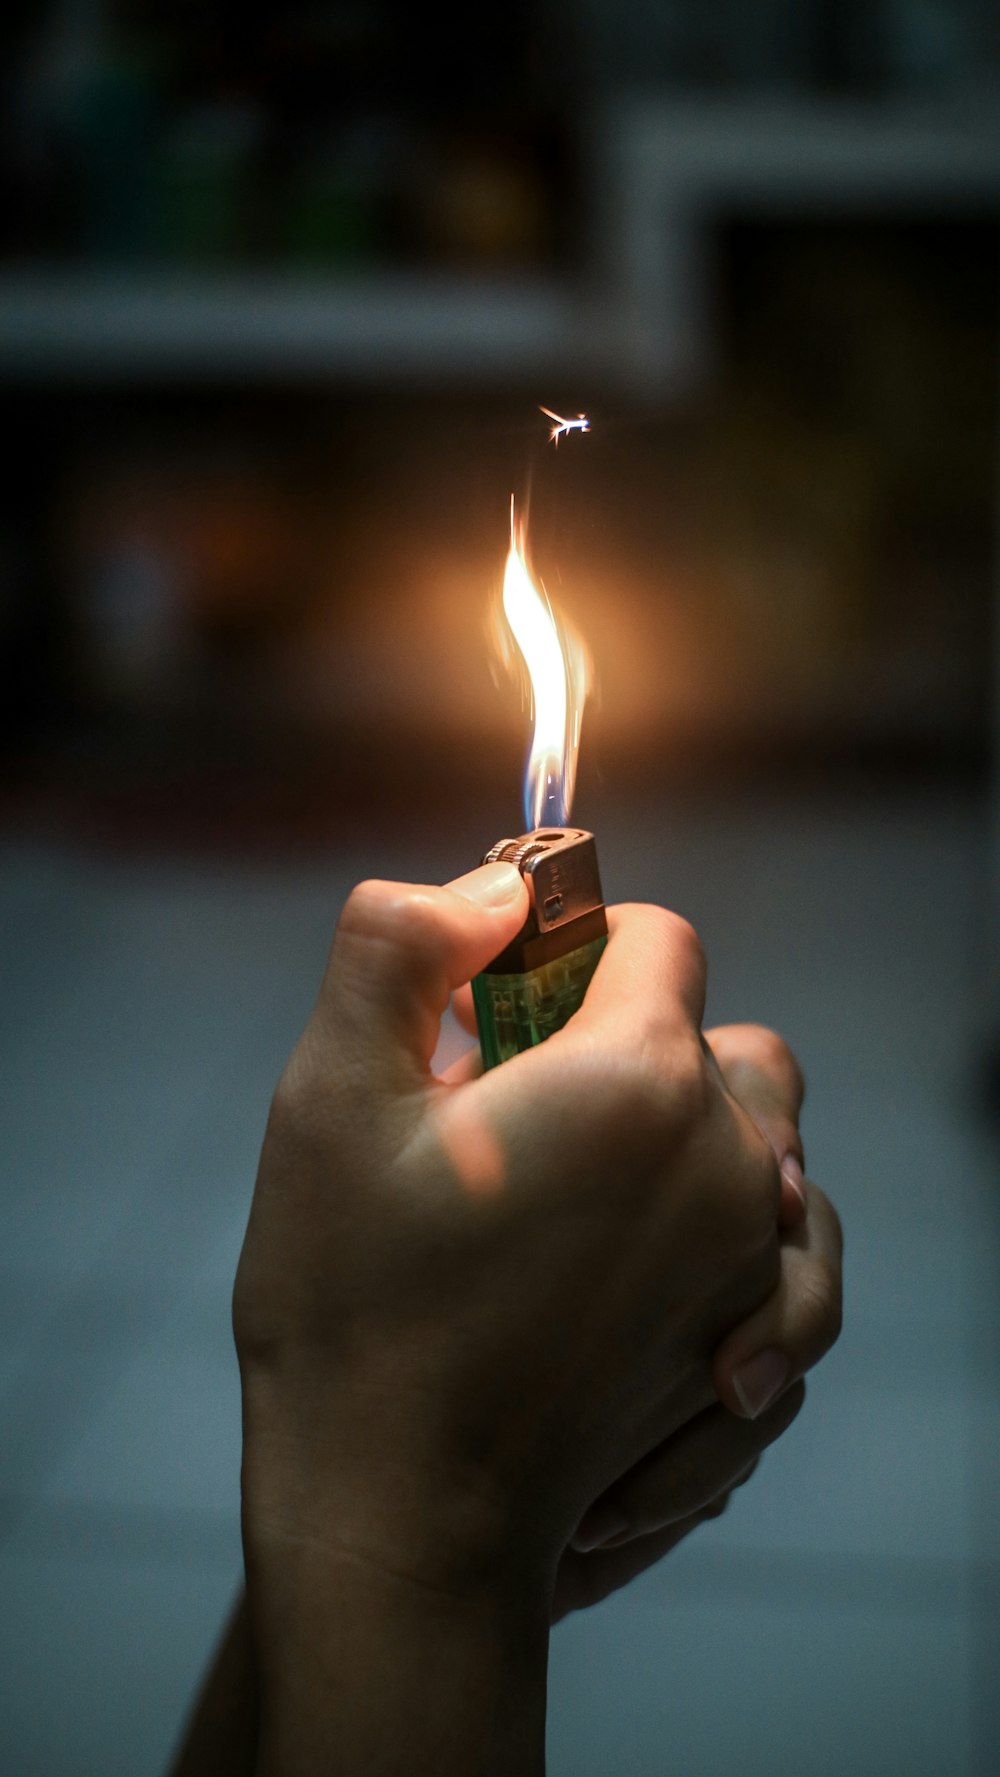 kølig Overleve fremstille 1K+ Lighter Pictures | Download Free Images on Unsplash